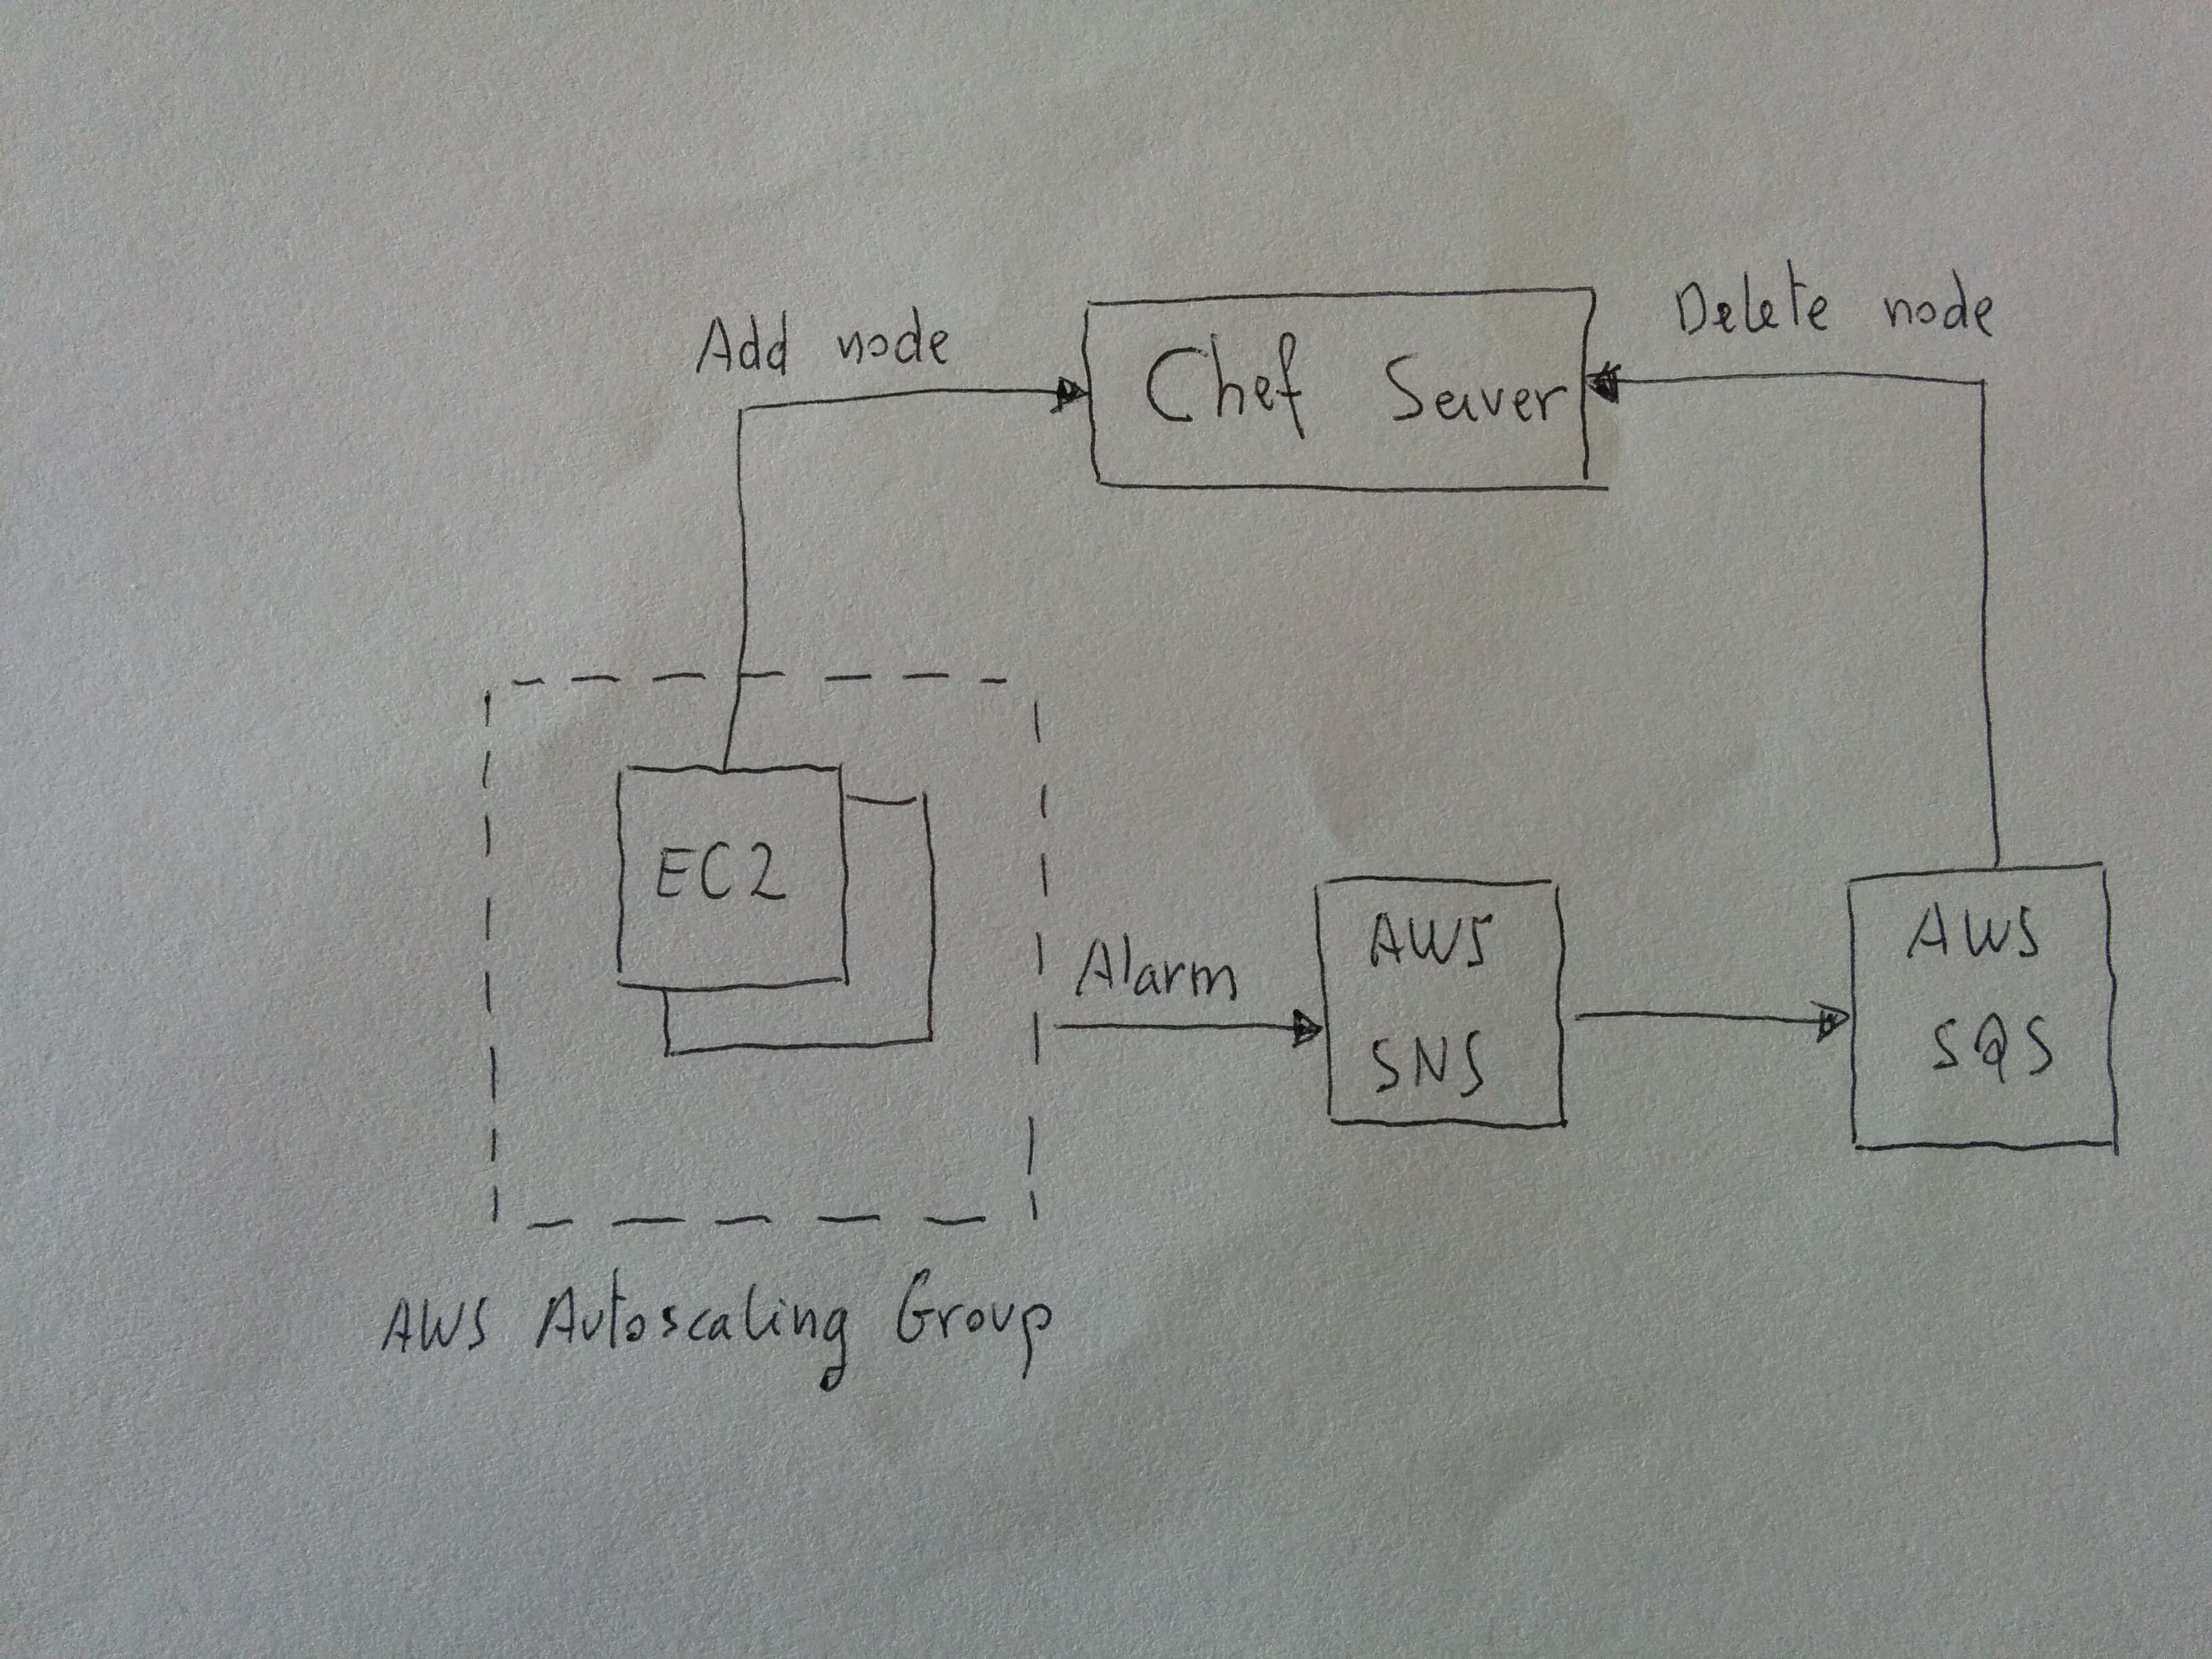 AWS Autoscaling and chef server integration